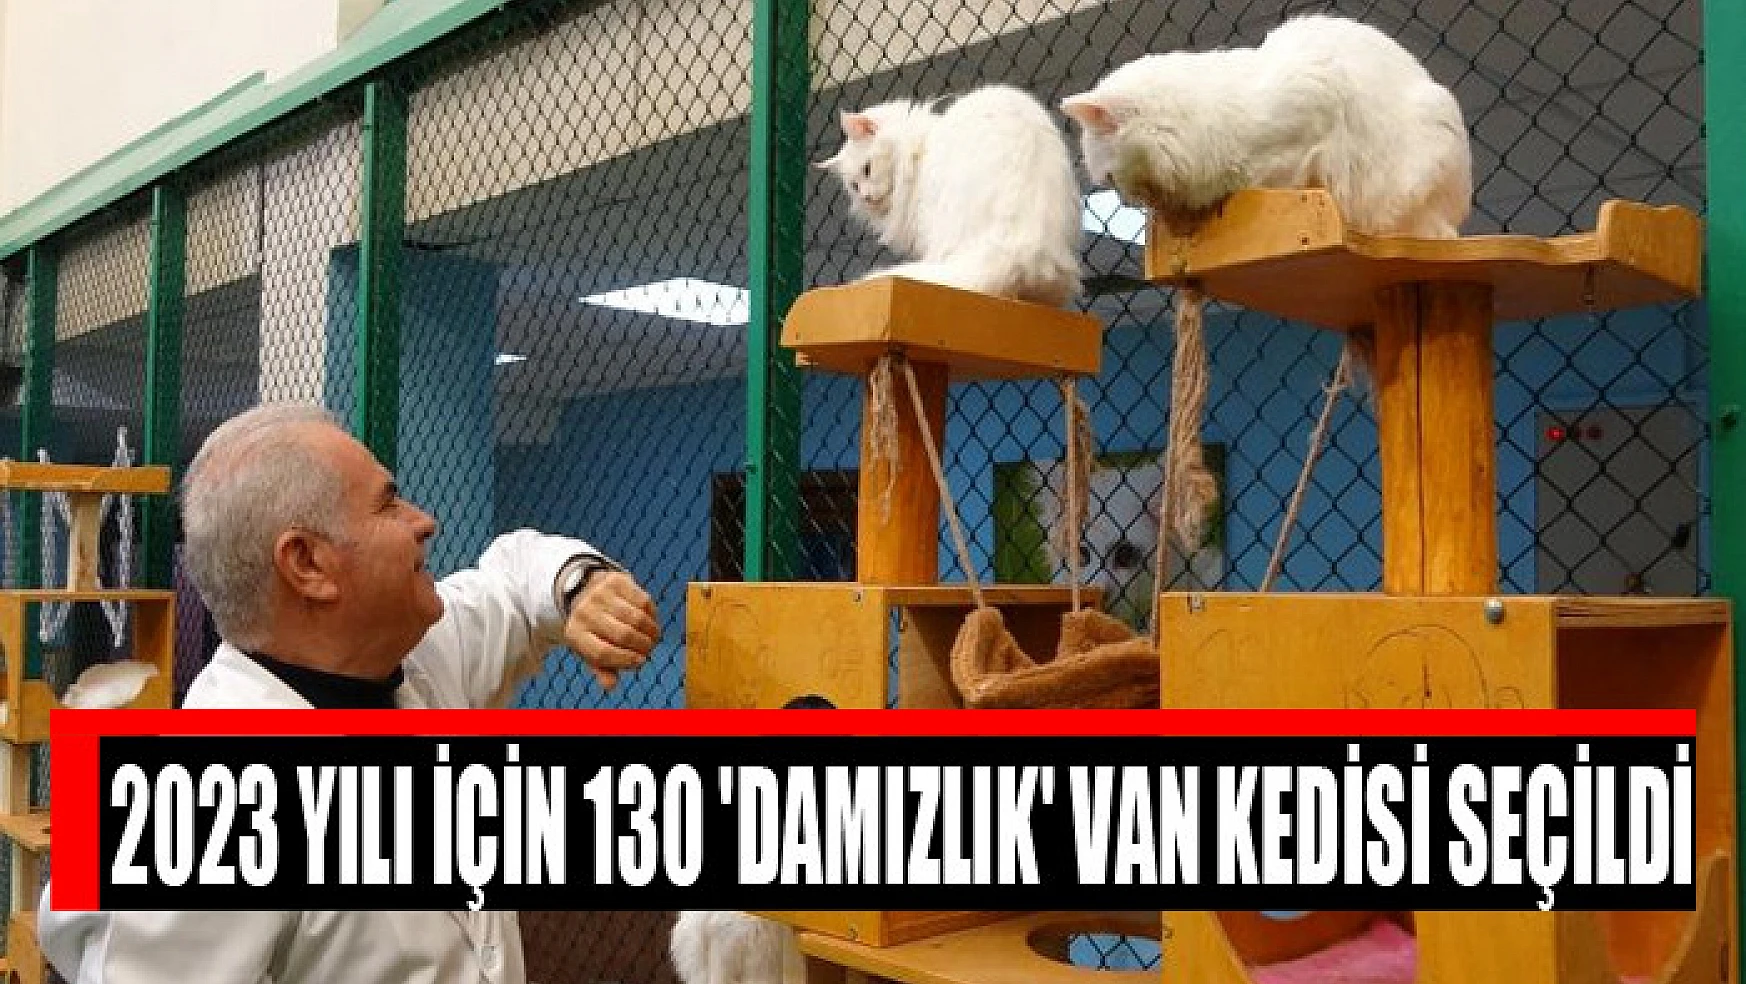 2023 yılı için 130 'damızlık' Van kedisi seçildi